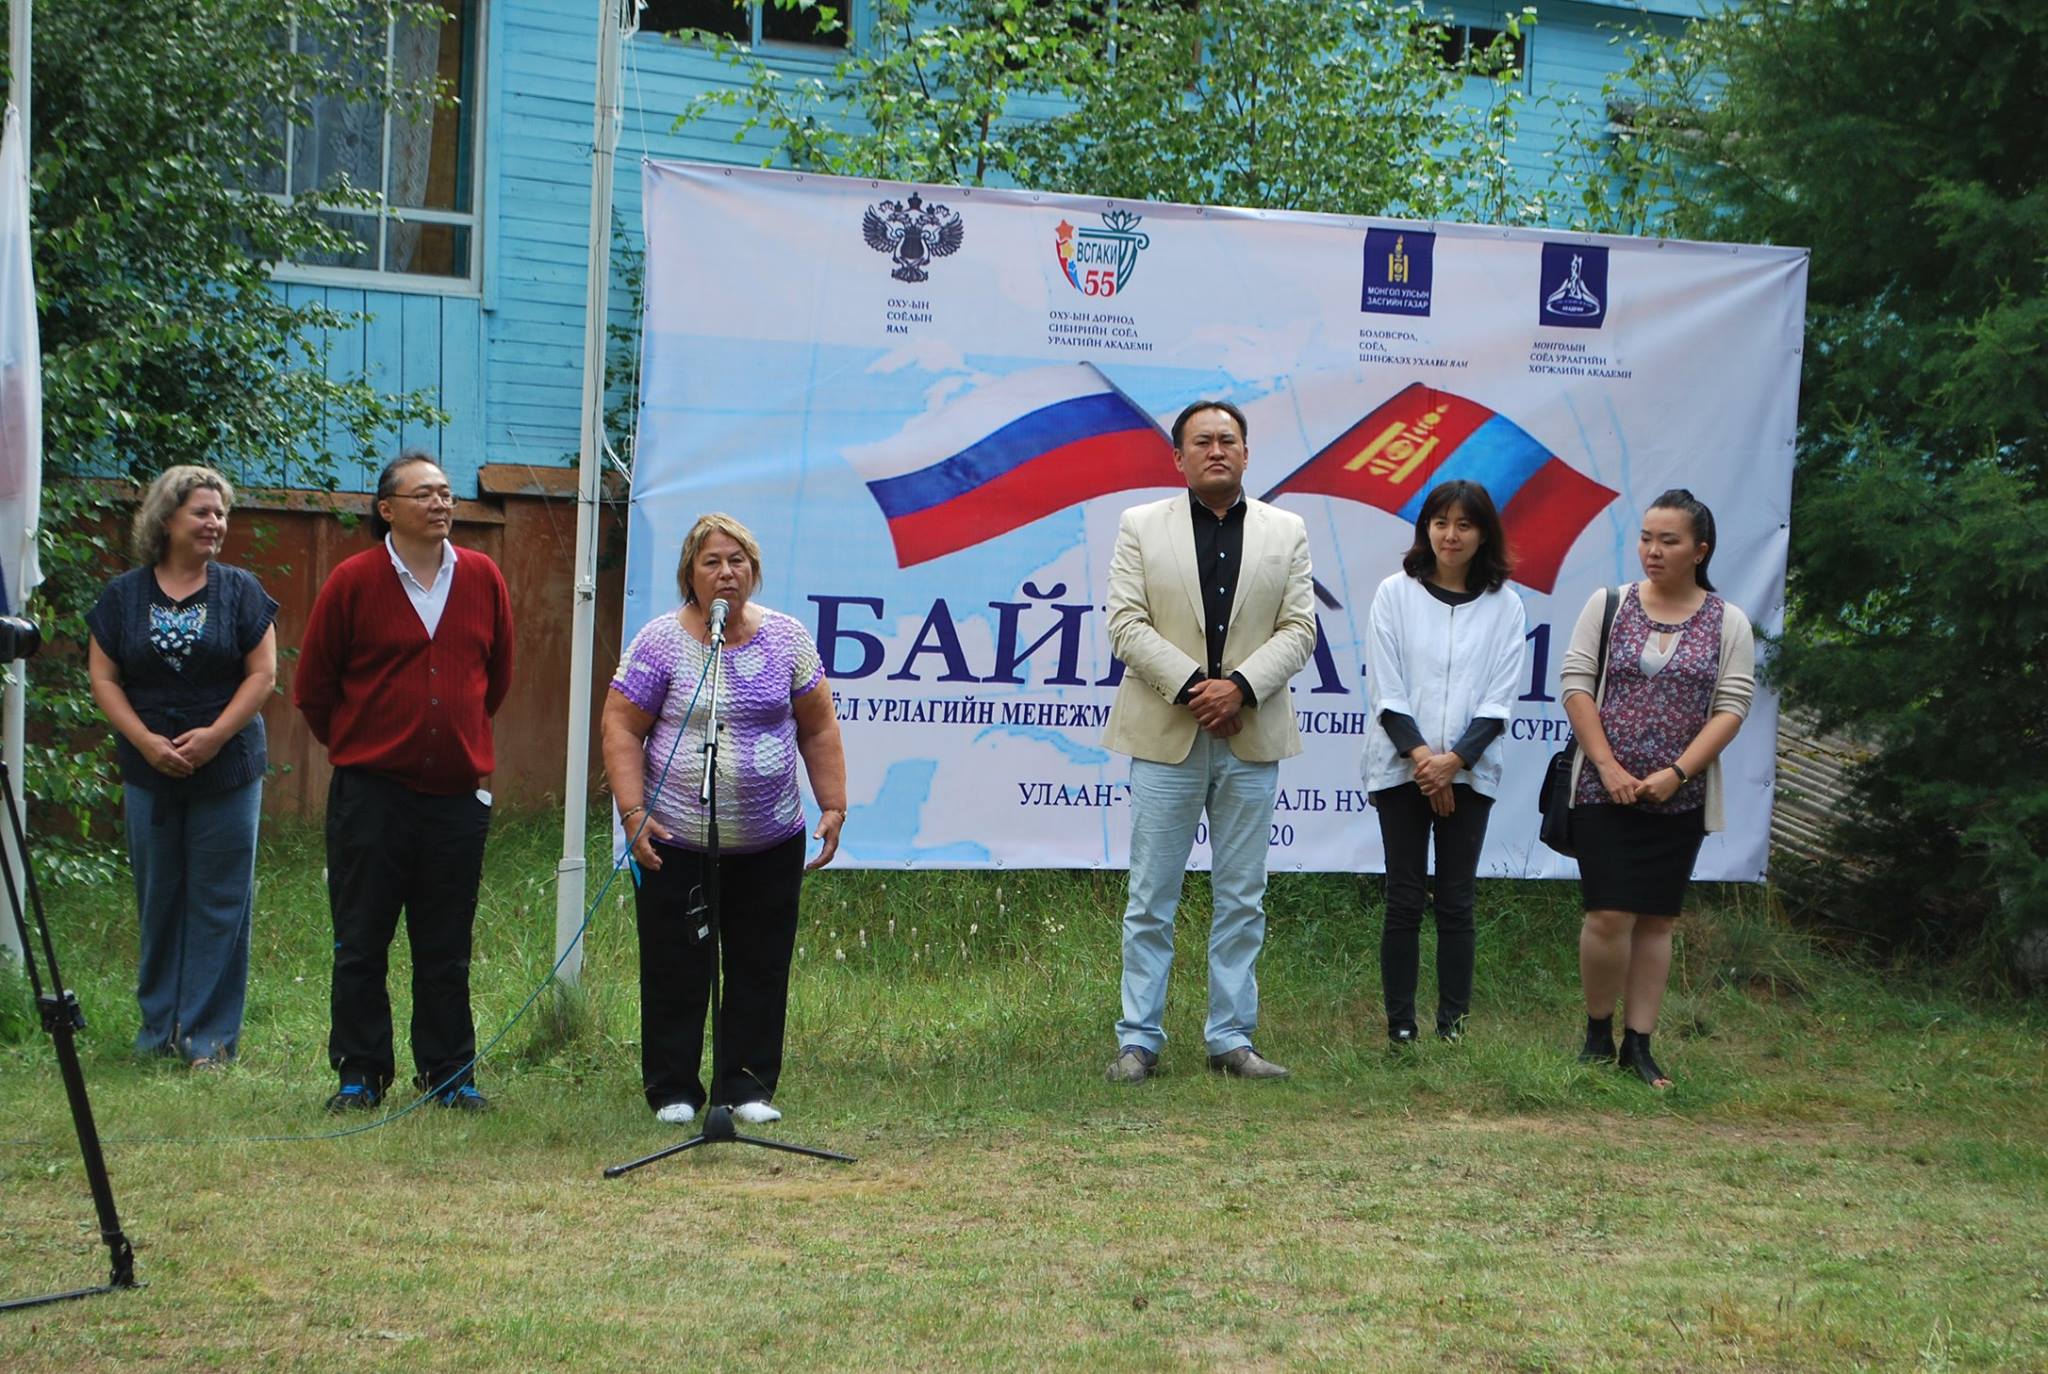 Соёл урлагийн менежмент "Байкал- 2015" олон улсын сургалт зохион байгуулагдлаа